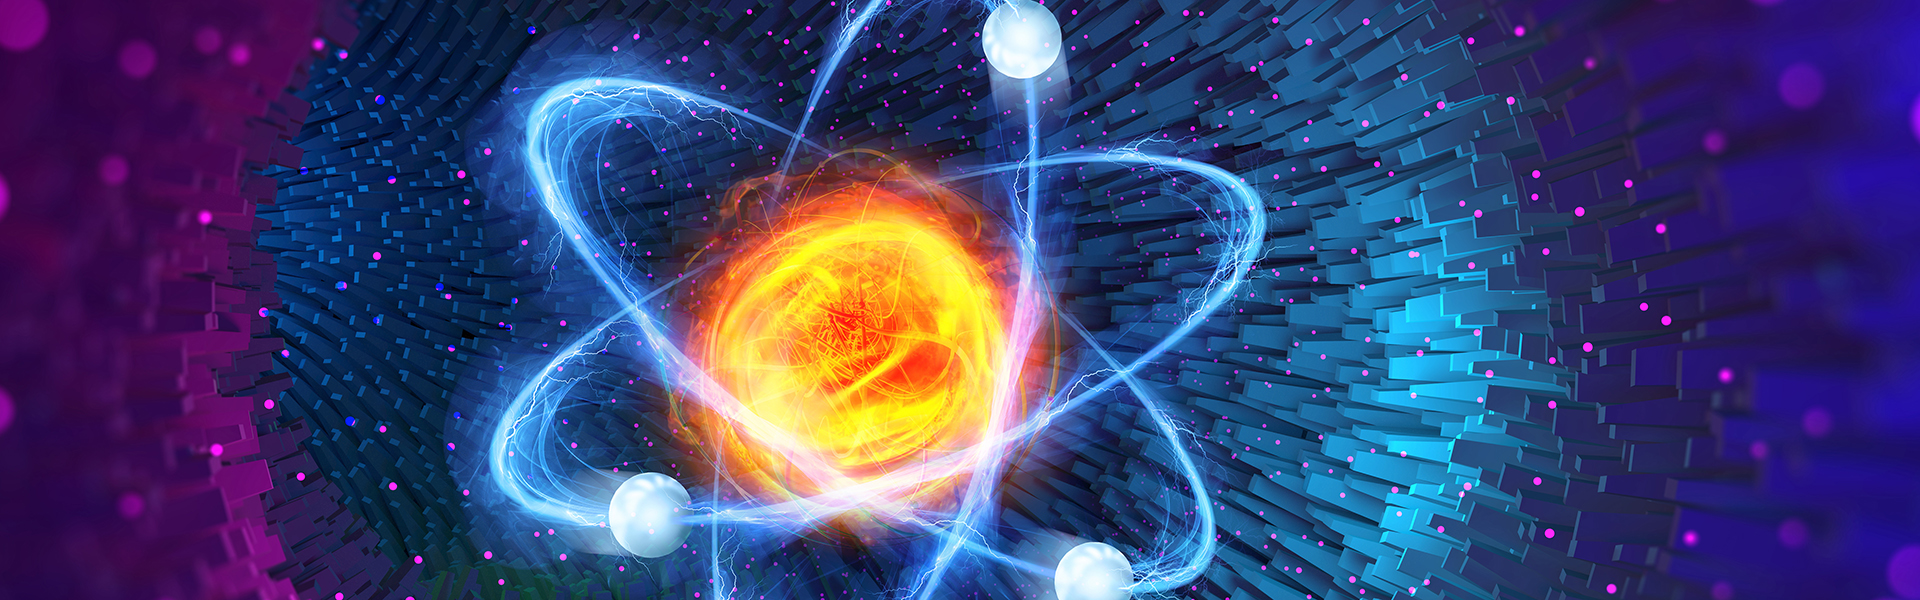 Illustration eines energiegeladenen Atoms